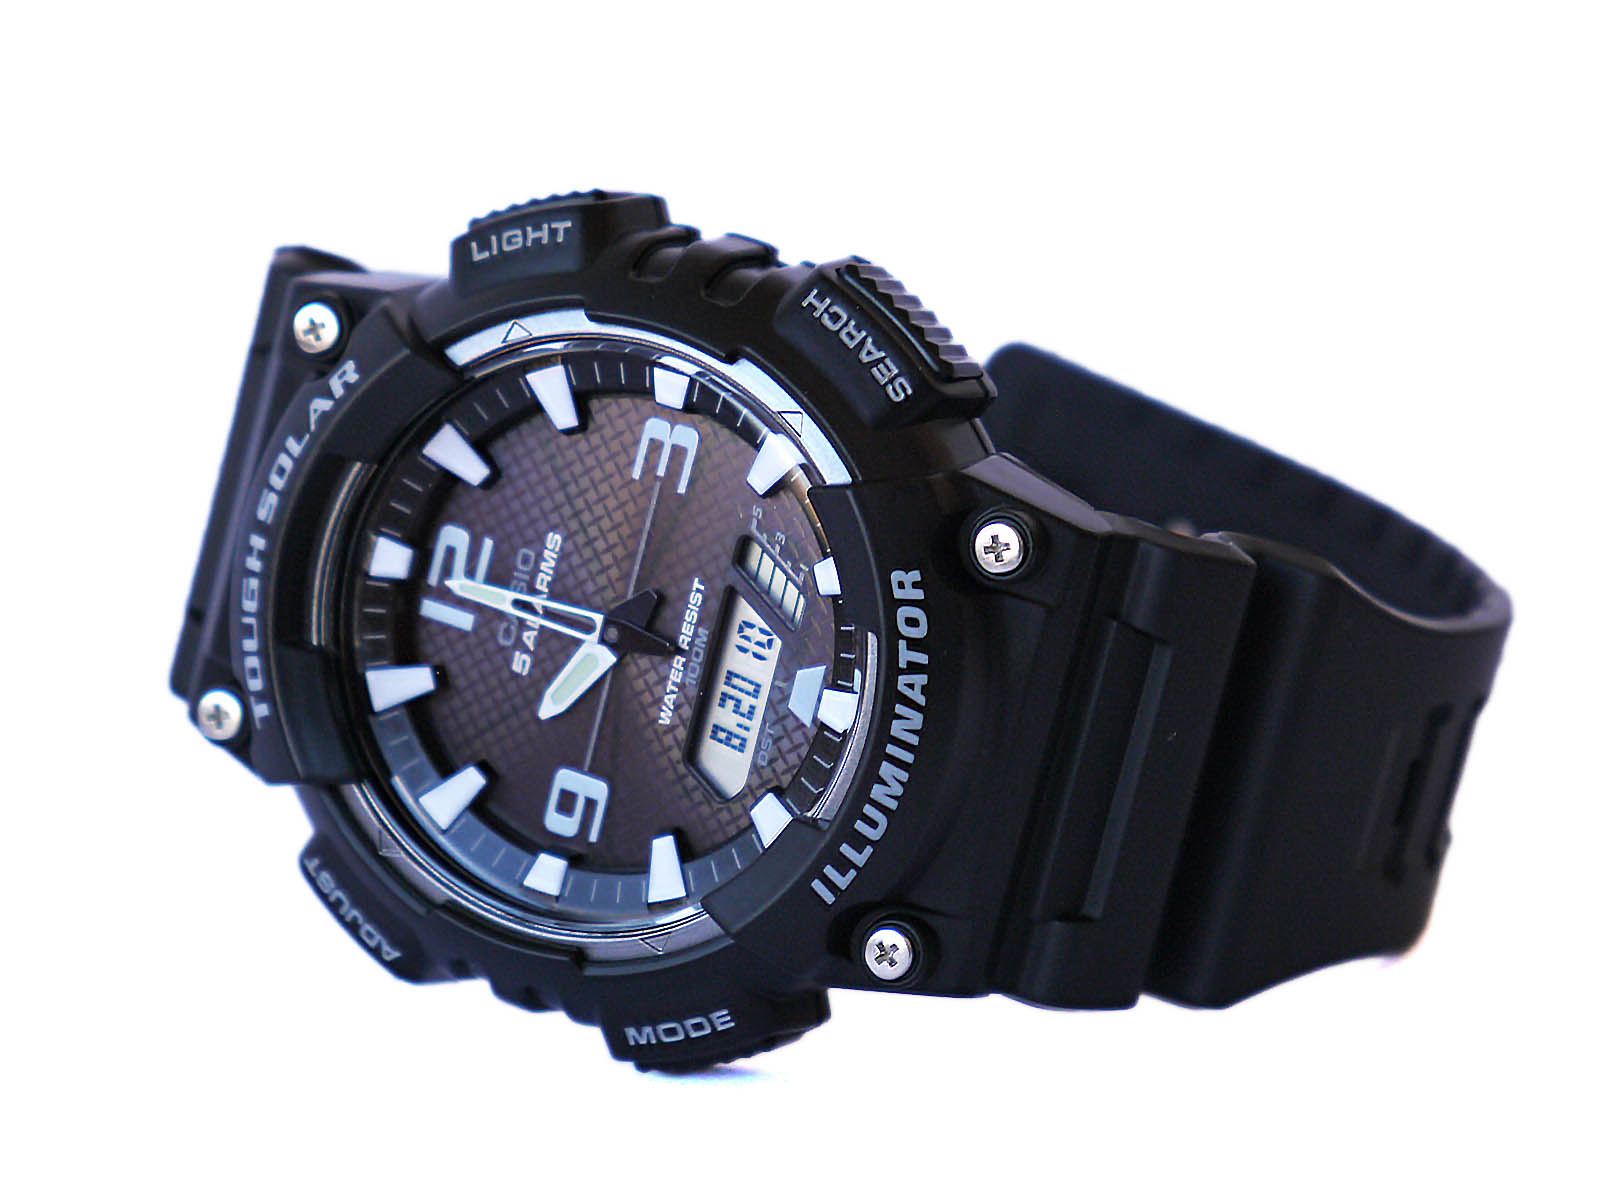 Solar Casio-AQ-S810-1AV Watch Watch ⋆ Tough High Quality Gallery Digi-Analog